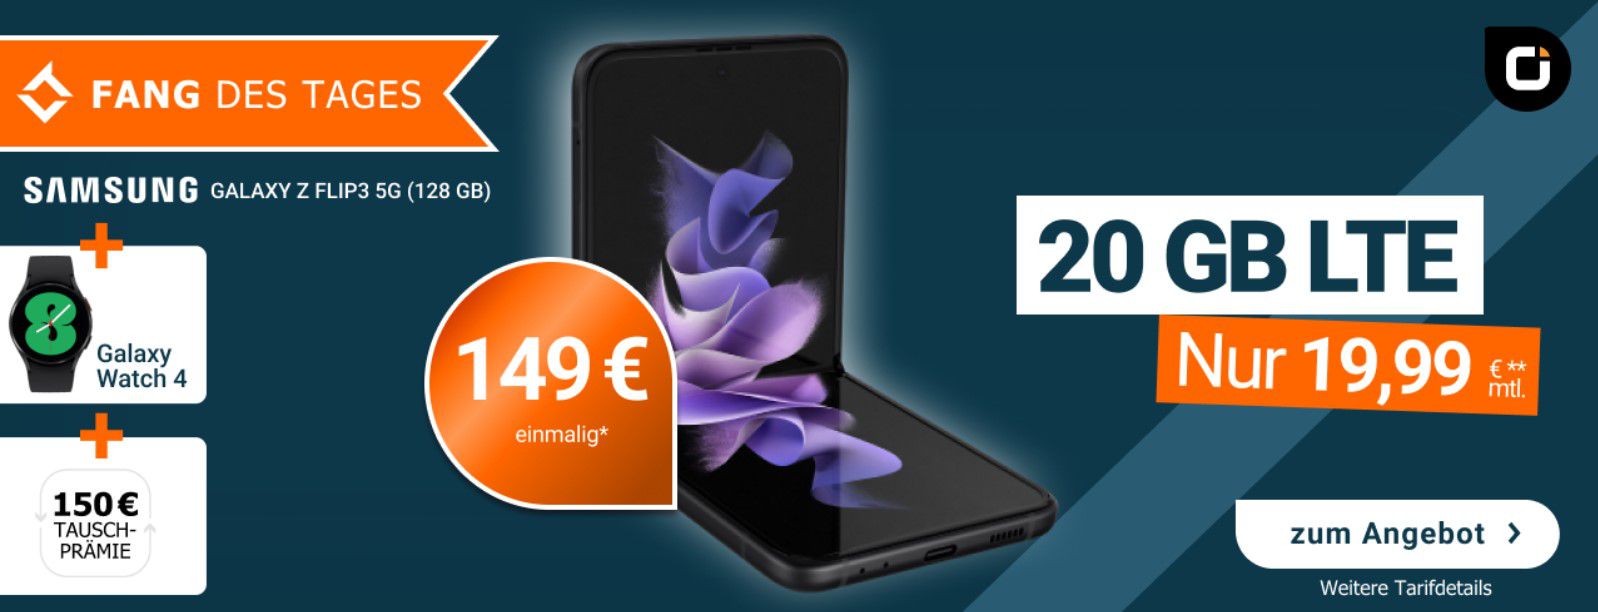 Knaller! Samsung Galaxy Z Flip3 5G 128GB + Watch4 für 149€ + Vodafone Allnet Flat 20GB für 19,99€ mtl. + 150€ Eintauschprämie